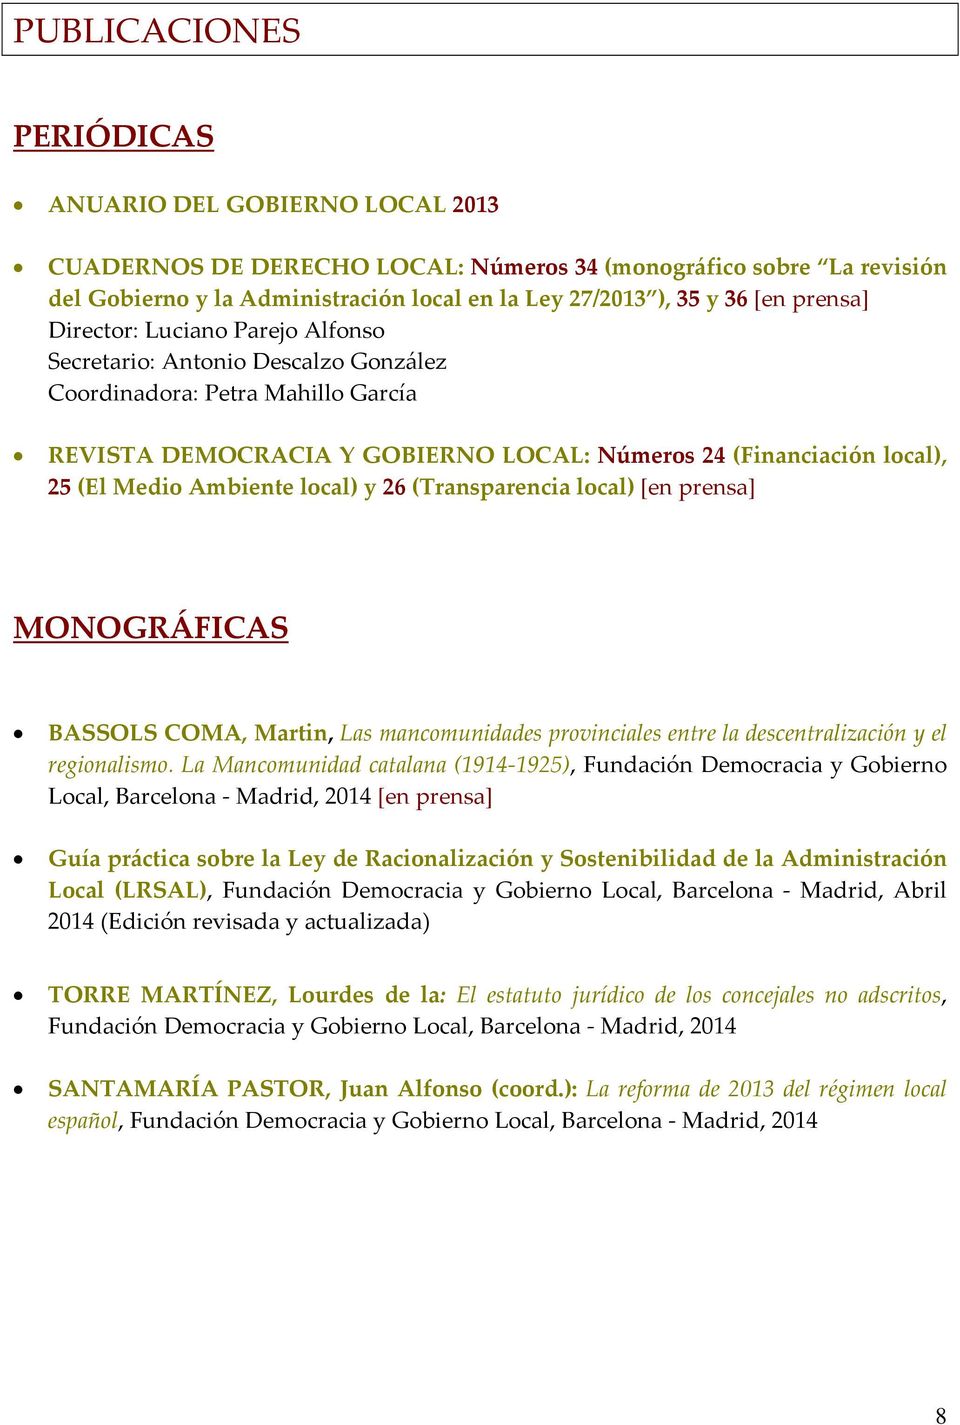 Ambiente local) y 26 (Transparencia local) [en prensa] MONOGRÁFICAS BASSOLS COMA, Martin, Las mancomunidades provinciales entre la descentralización y el regionalismo.